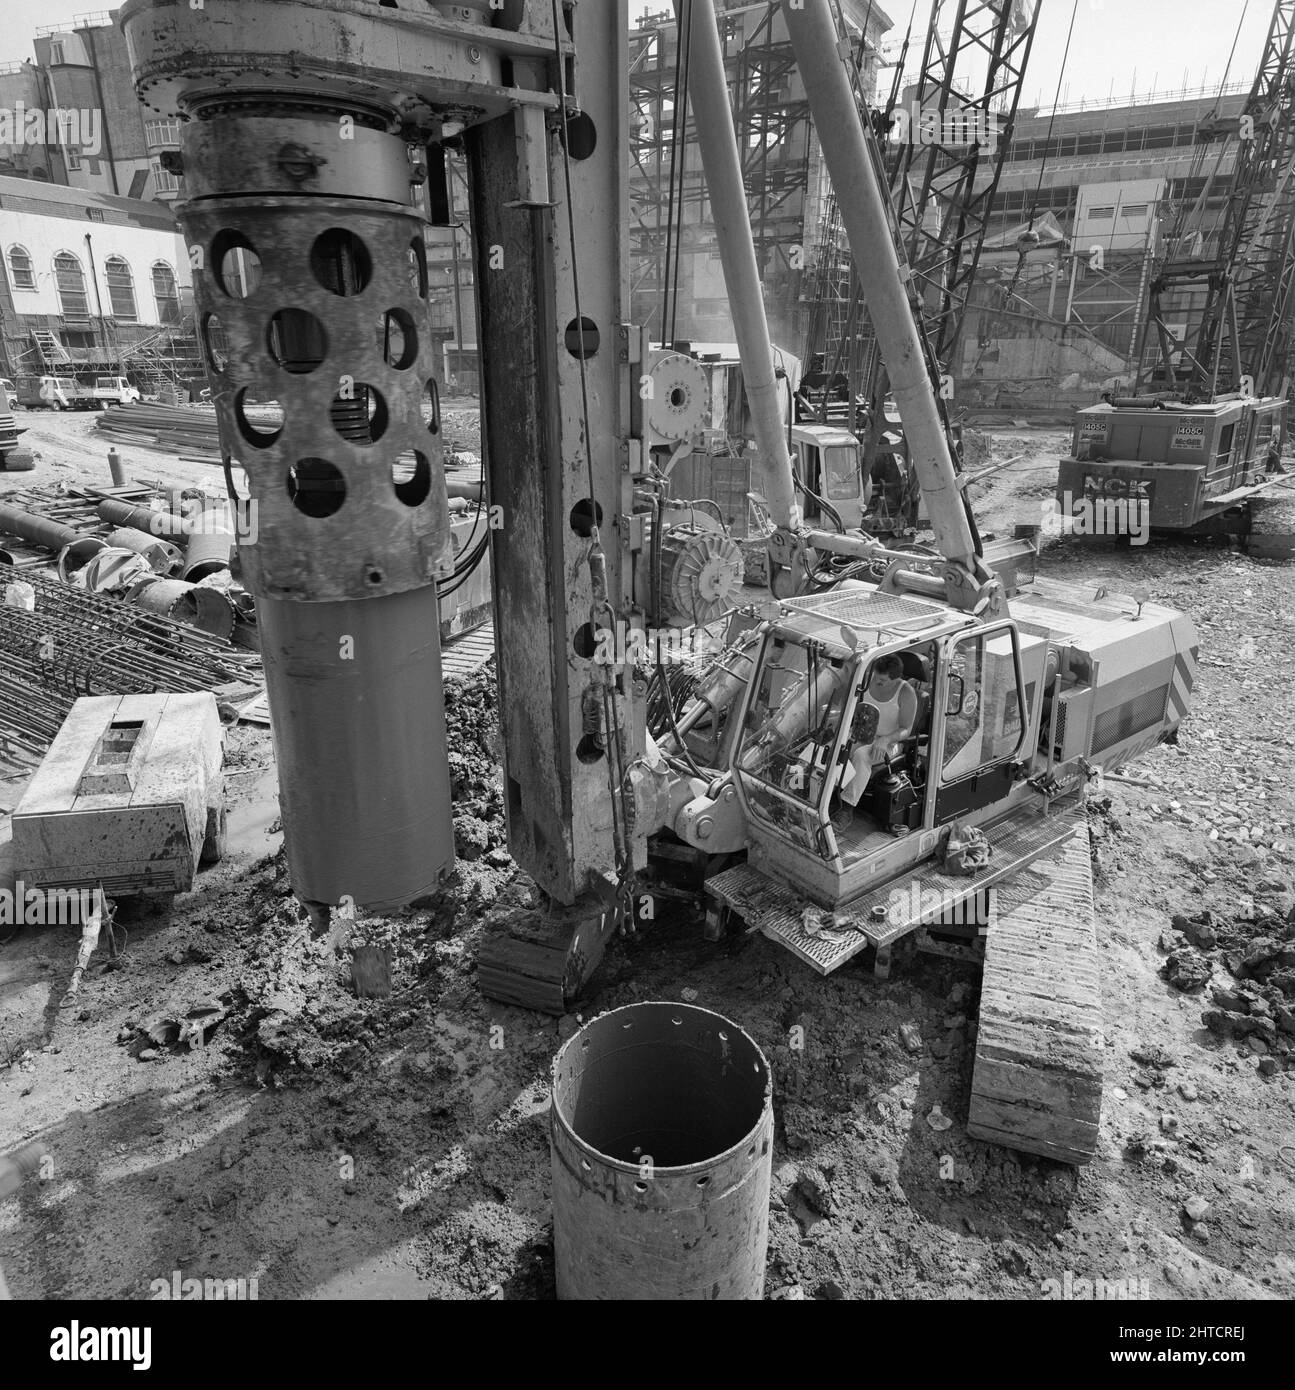 Vintners Place, Upper Thames Street, Queenhithe, Londres, 31/05/1990. Un equipo de perforación de pilotes en uso en el sitio de construcción de Vintners Place. Laing asumió el contrato de gestión &#xa3;79m para la construcción de un desarrollo de oficina de alta calidad en 37.000sqm en Vintners Place entre marzo de 1989 y diciembre de 1992. Las obras en el lugar comenzaron en junio de 1989 con la demolición de 10 edificios, incluyendo Vintry House y Kennett Wharf en la orilla del río. La fa&#xe7;ade de Thames House a lo largo de Queen Street Place fue preservada e incorporada en el desarrollo. El proyecto fue el primero dentro de la ciudad de Foto de stock